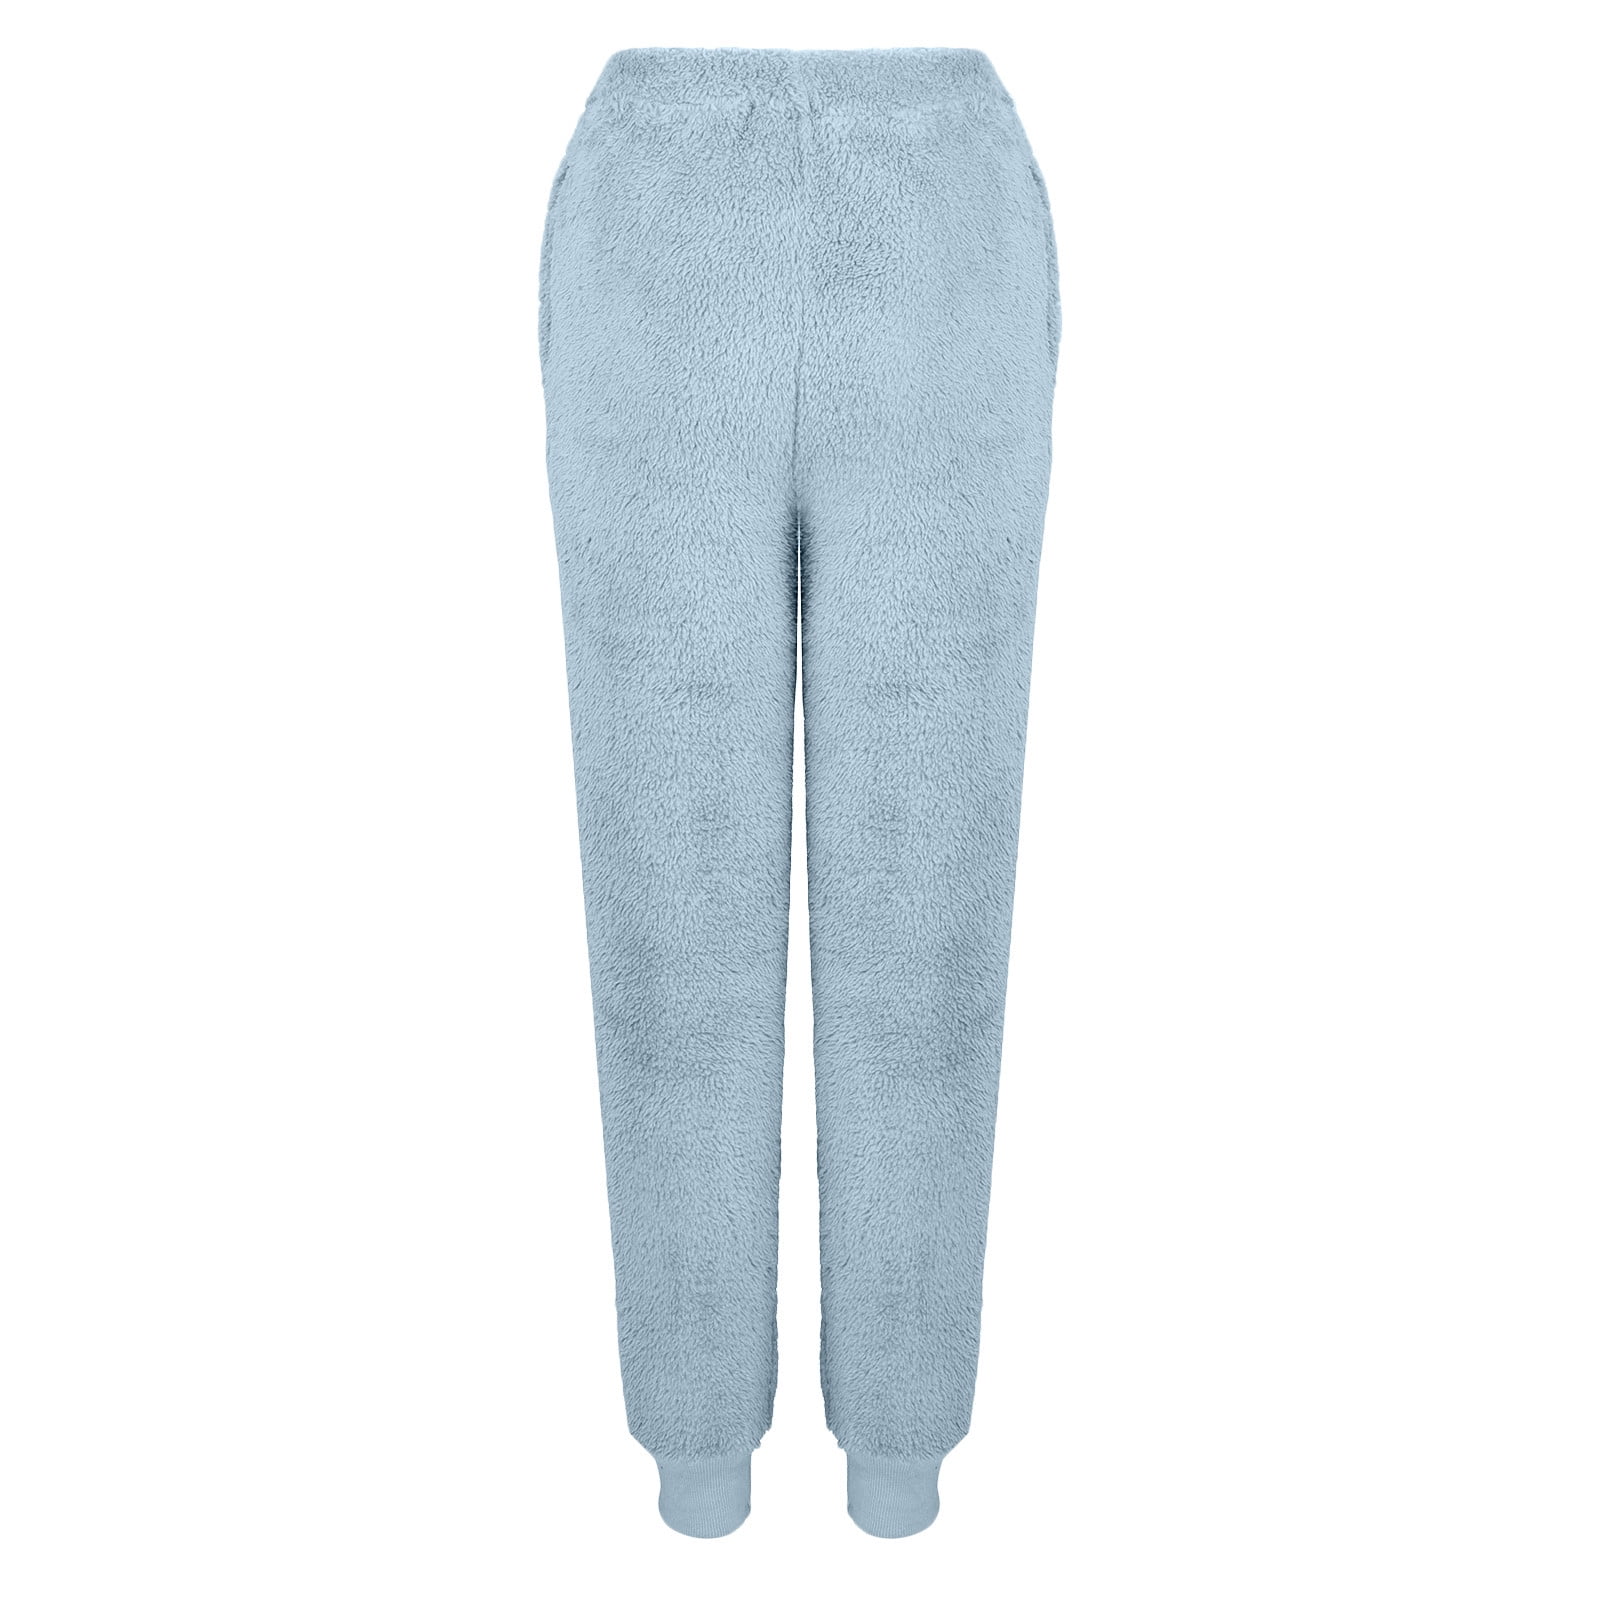 2 Pack Womens Soft Plush Fleece Pajama Pants, Pattern 41-48 